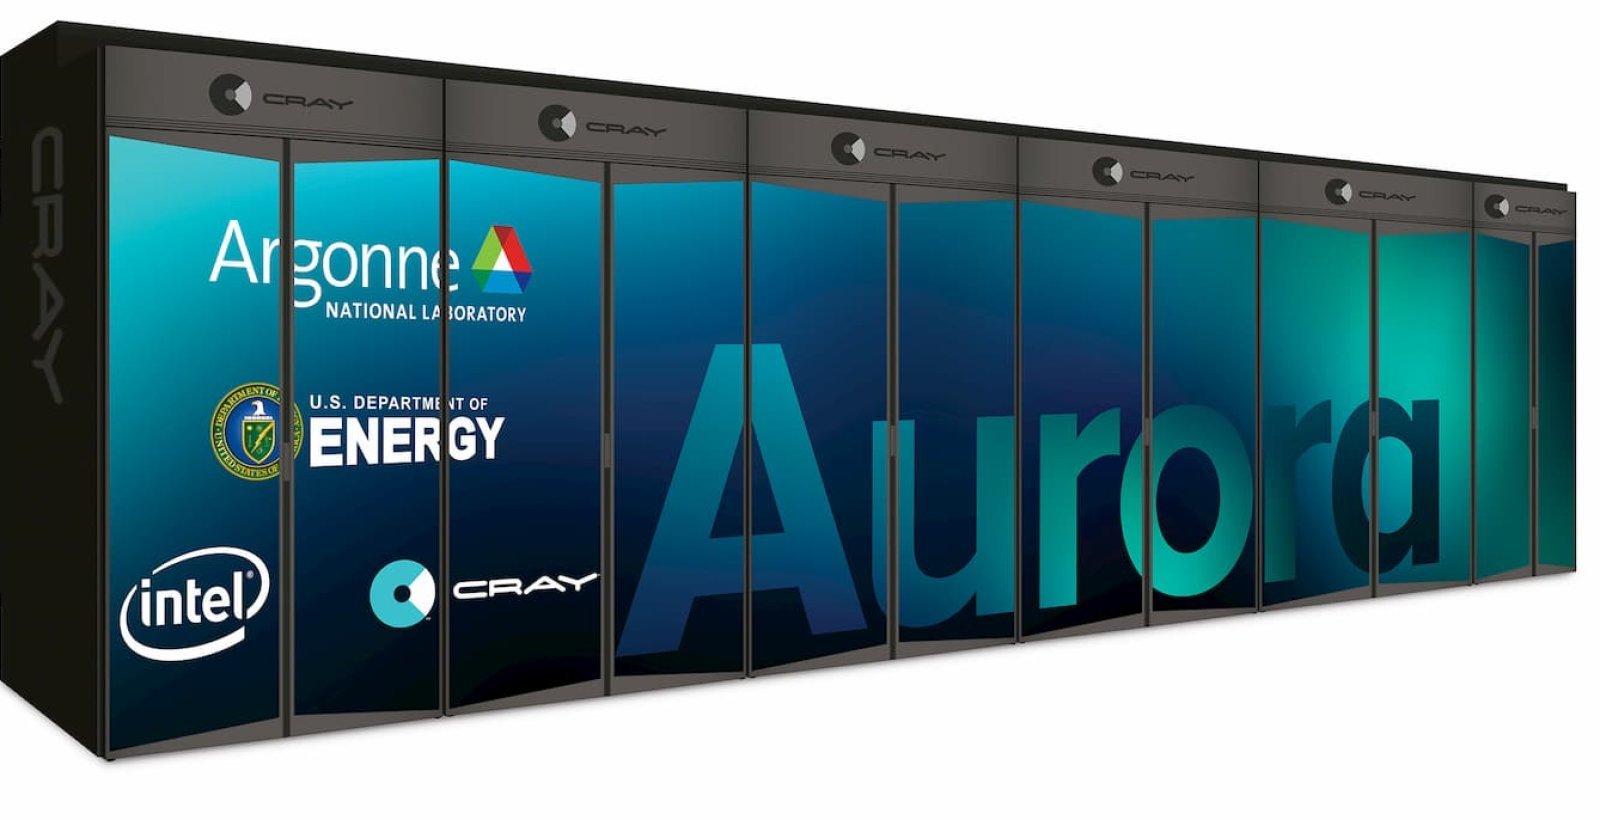 إنتل: حاسب Aurora العملاق يجري مليار مليار عملية حسابية في الثانية